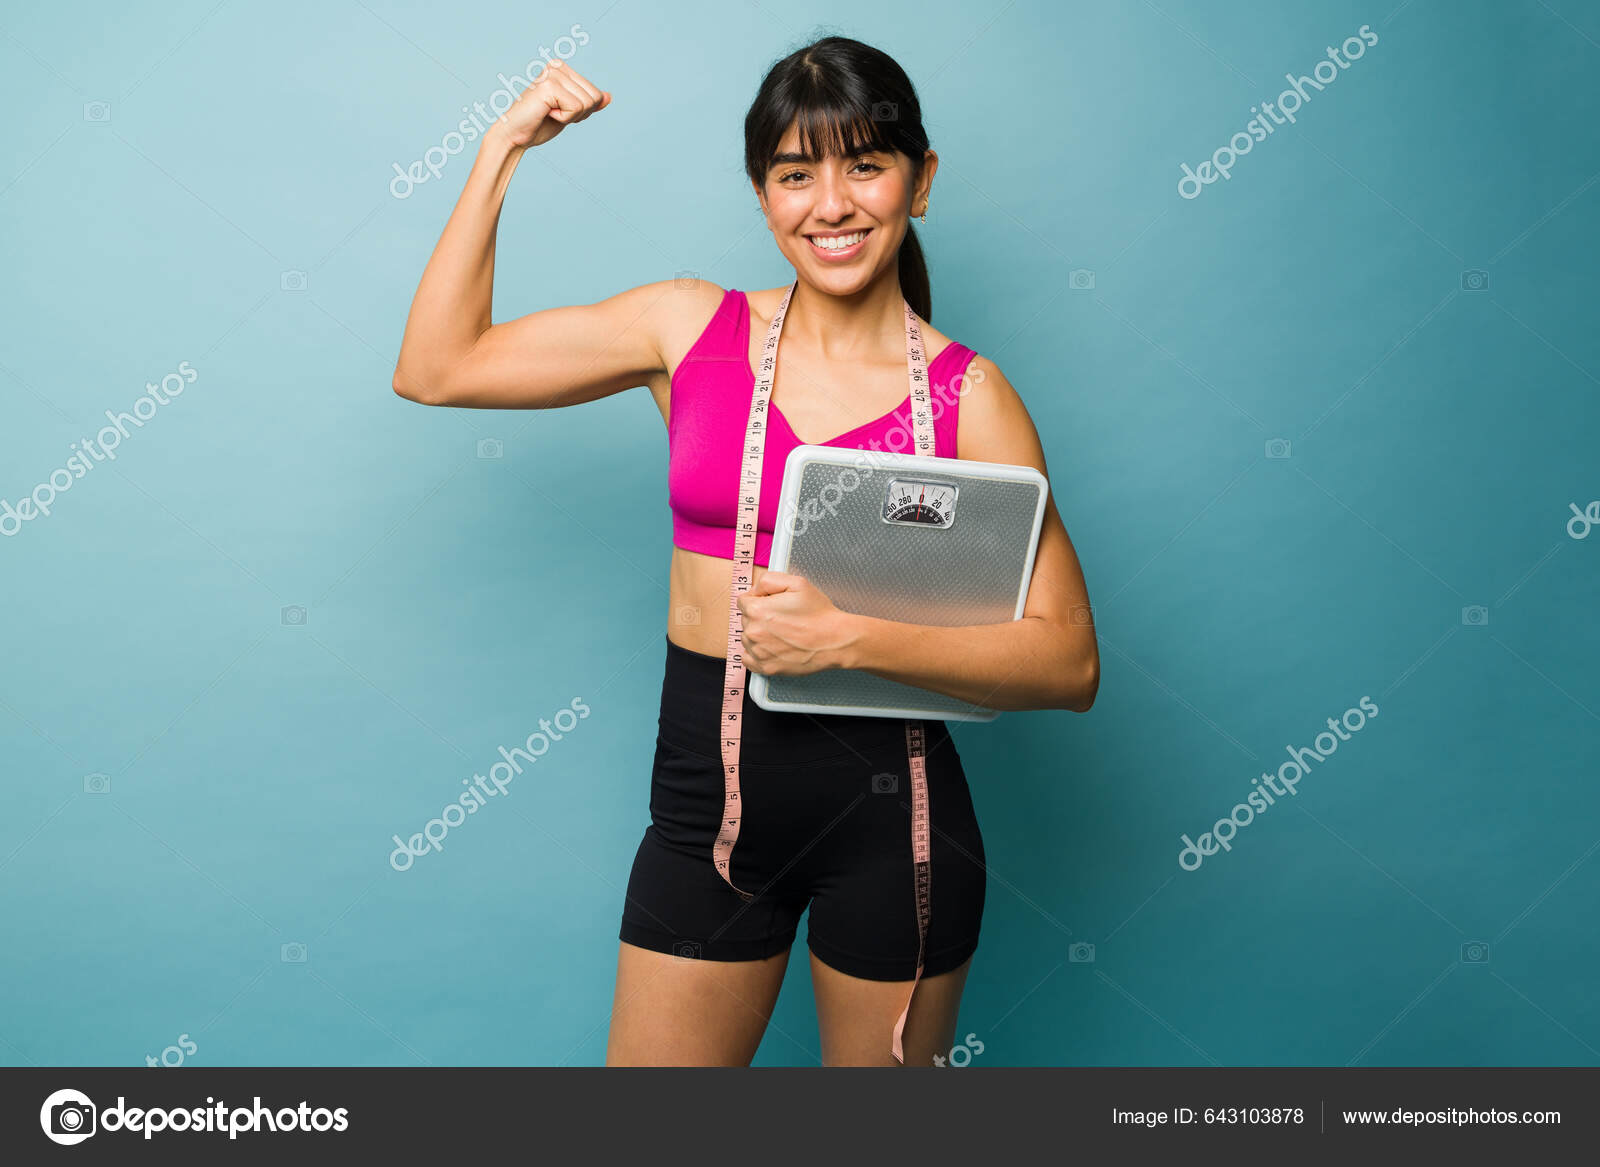 https://st5.depositphotos.com/1662991/64310/i/1600/depositphotos_643103878-stock-photo-strong-fit-woman-doing-bicep.jpg